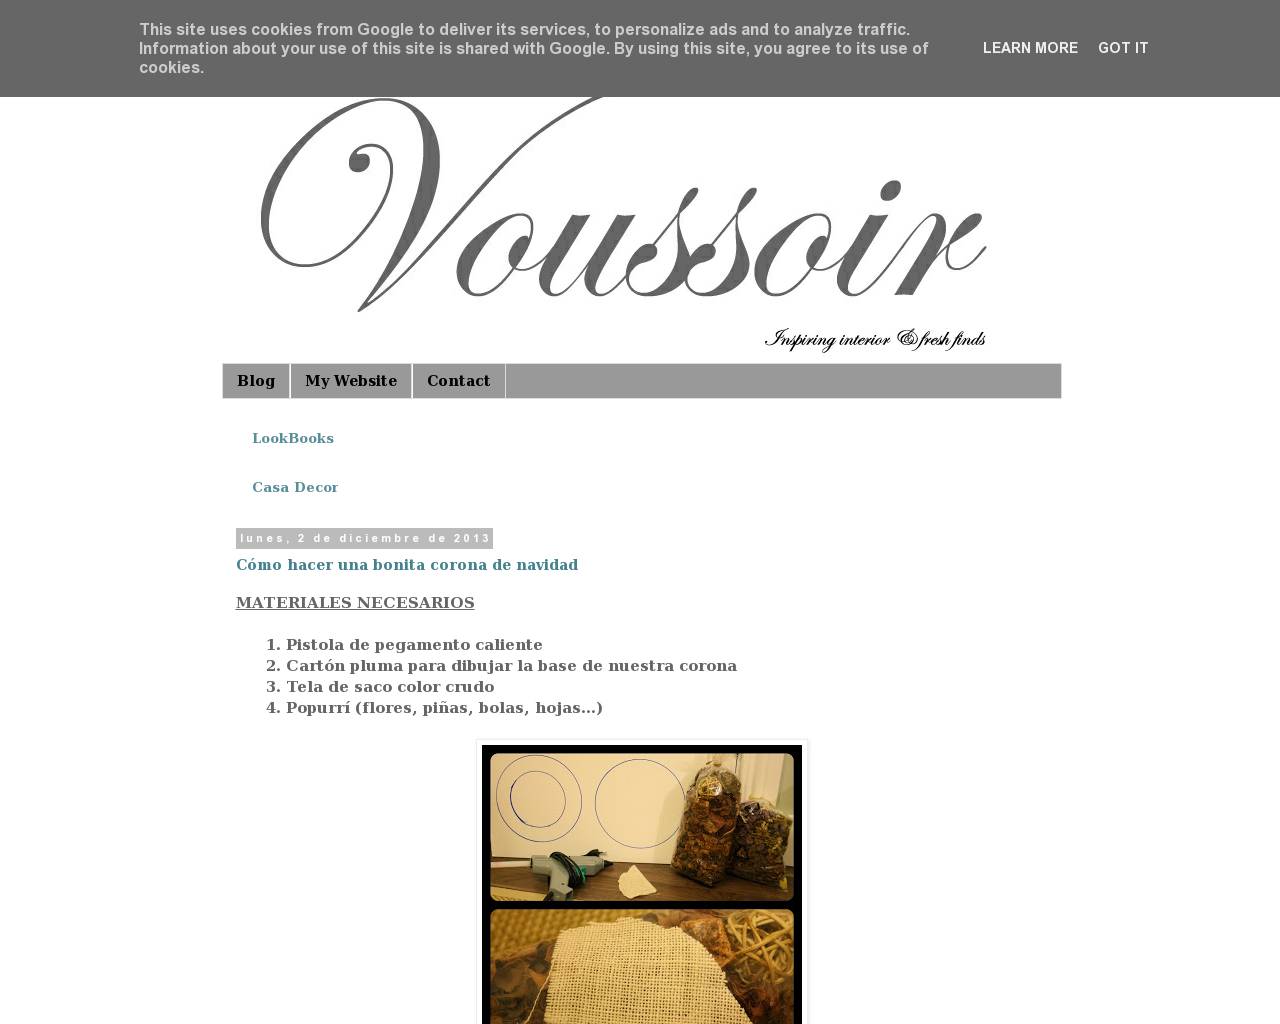 El sitio de la imagen v-voussoir.es en 1280x1024